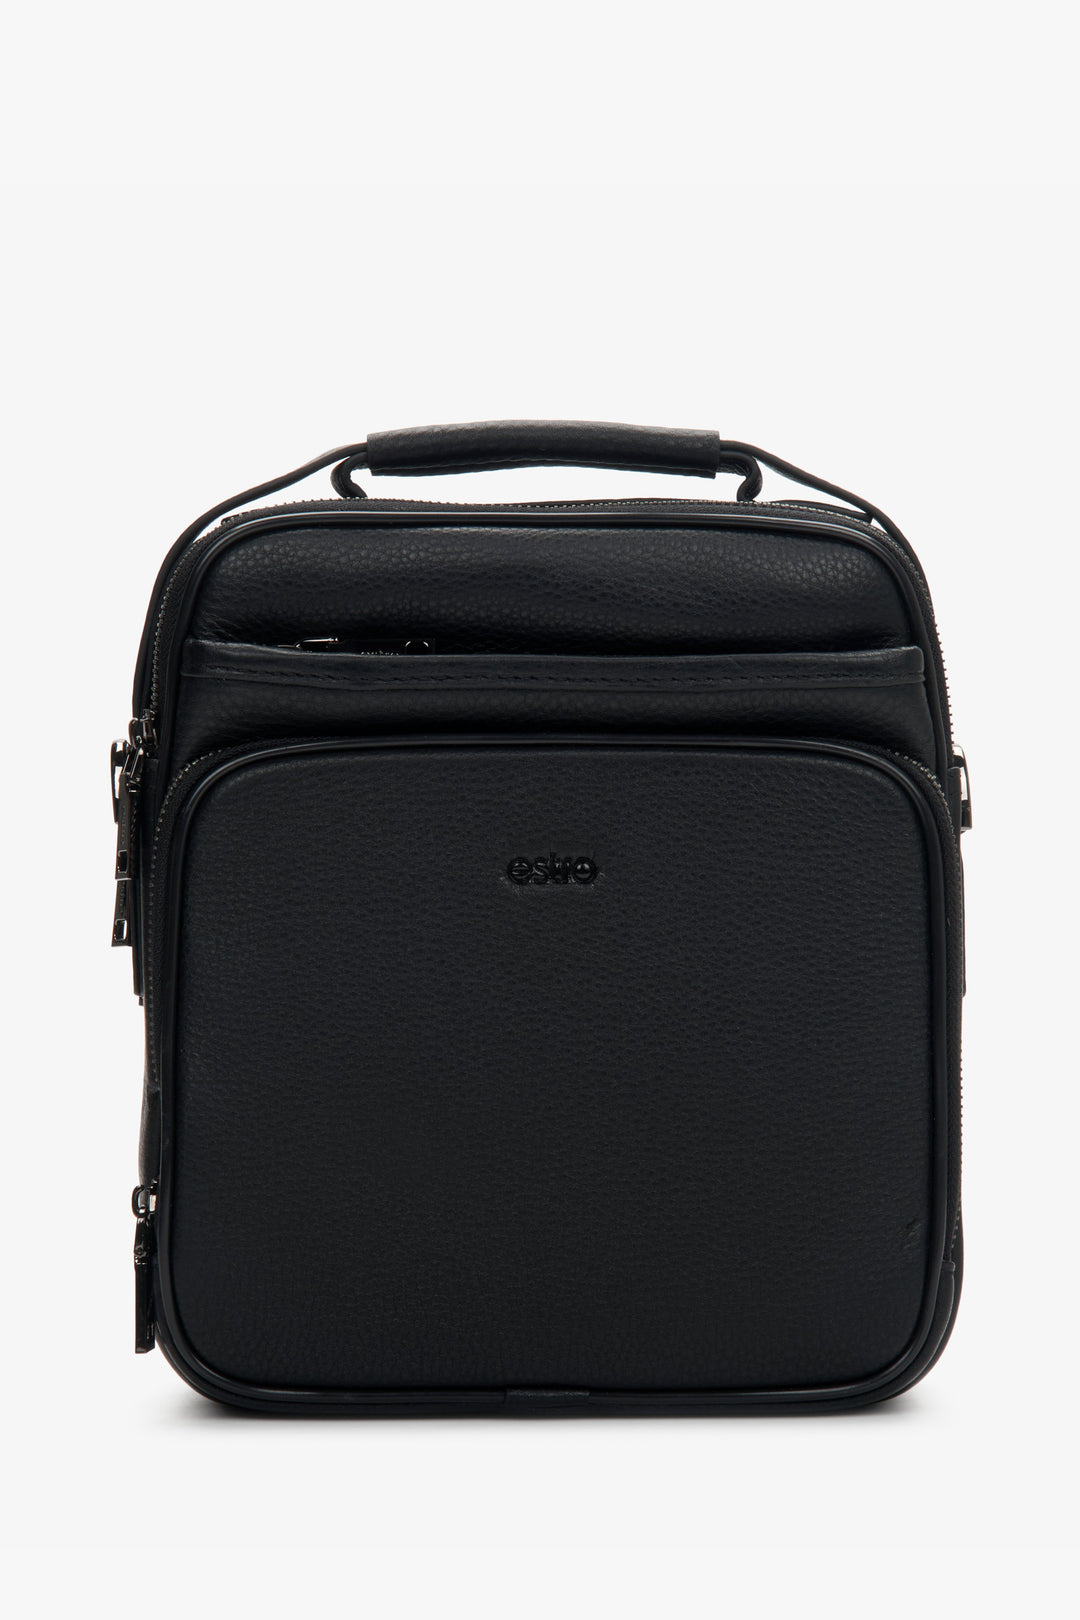 Men's Black Leather Waist Bag with Adjustable Strap Estro ER00110925.